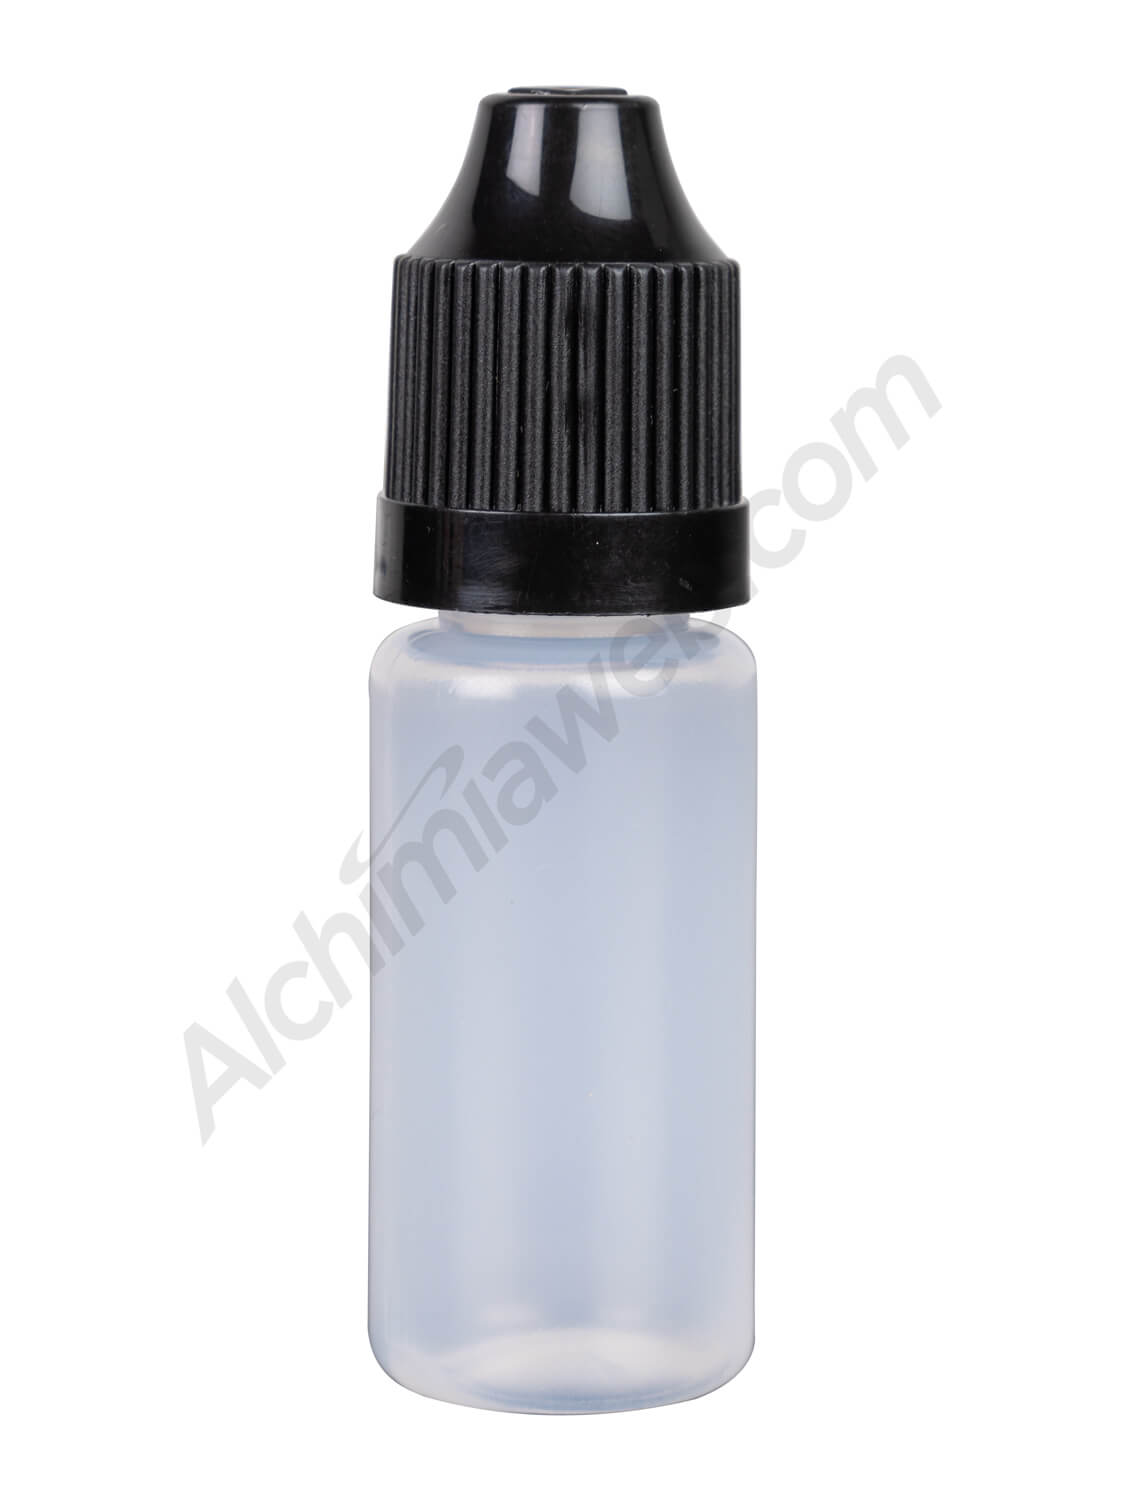 Botella mezcla Wax Liquidizer 